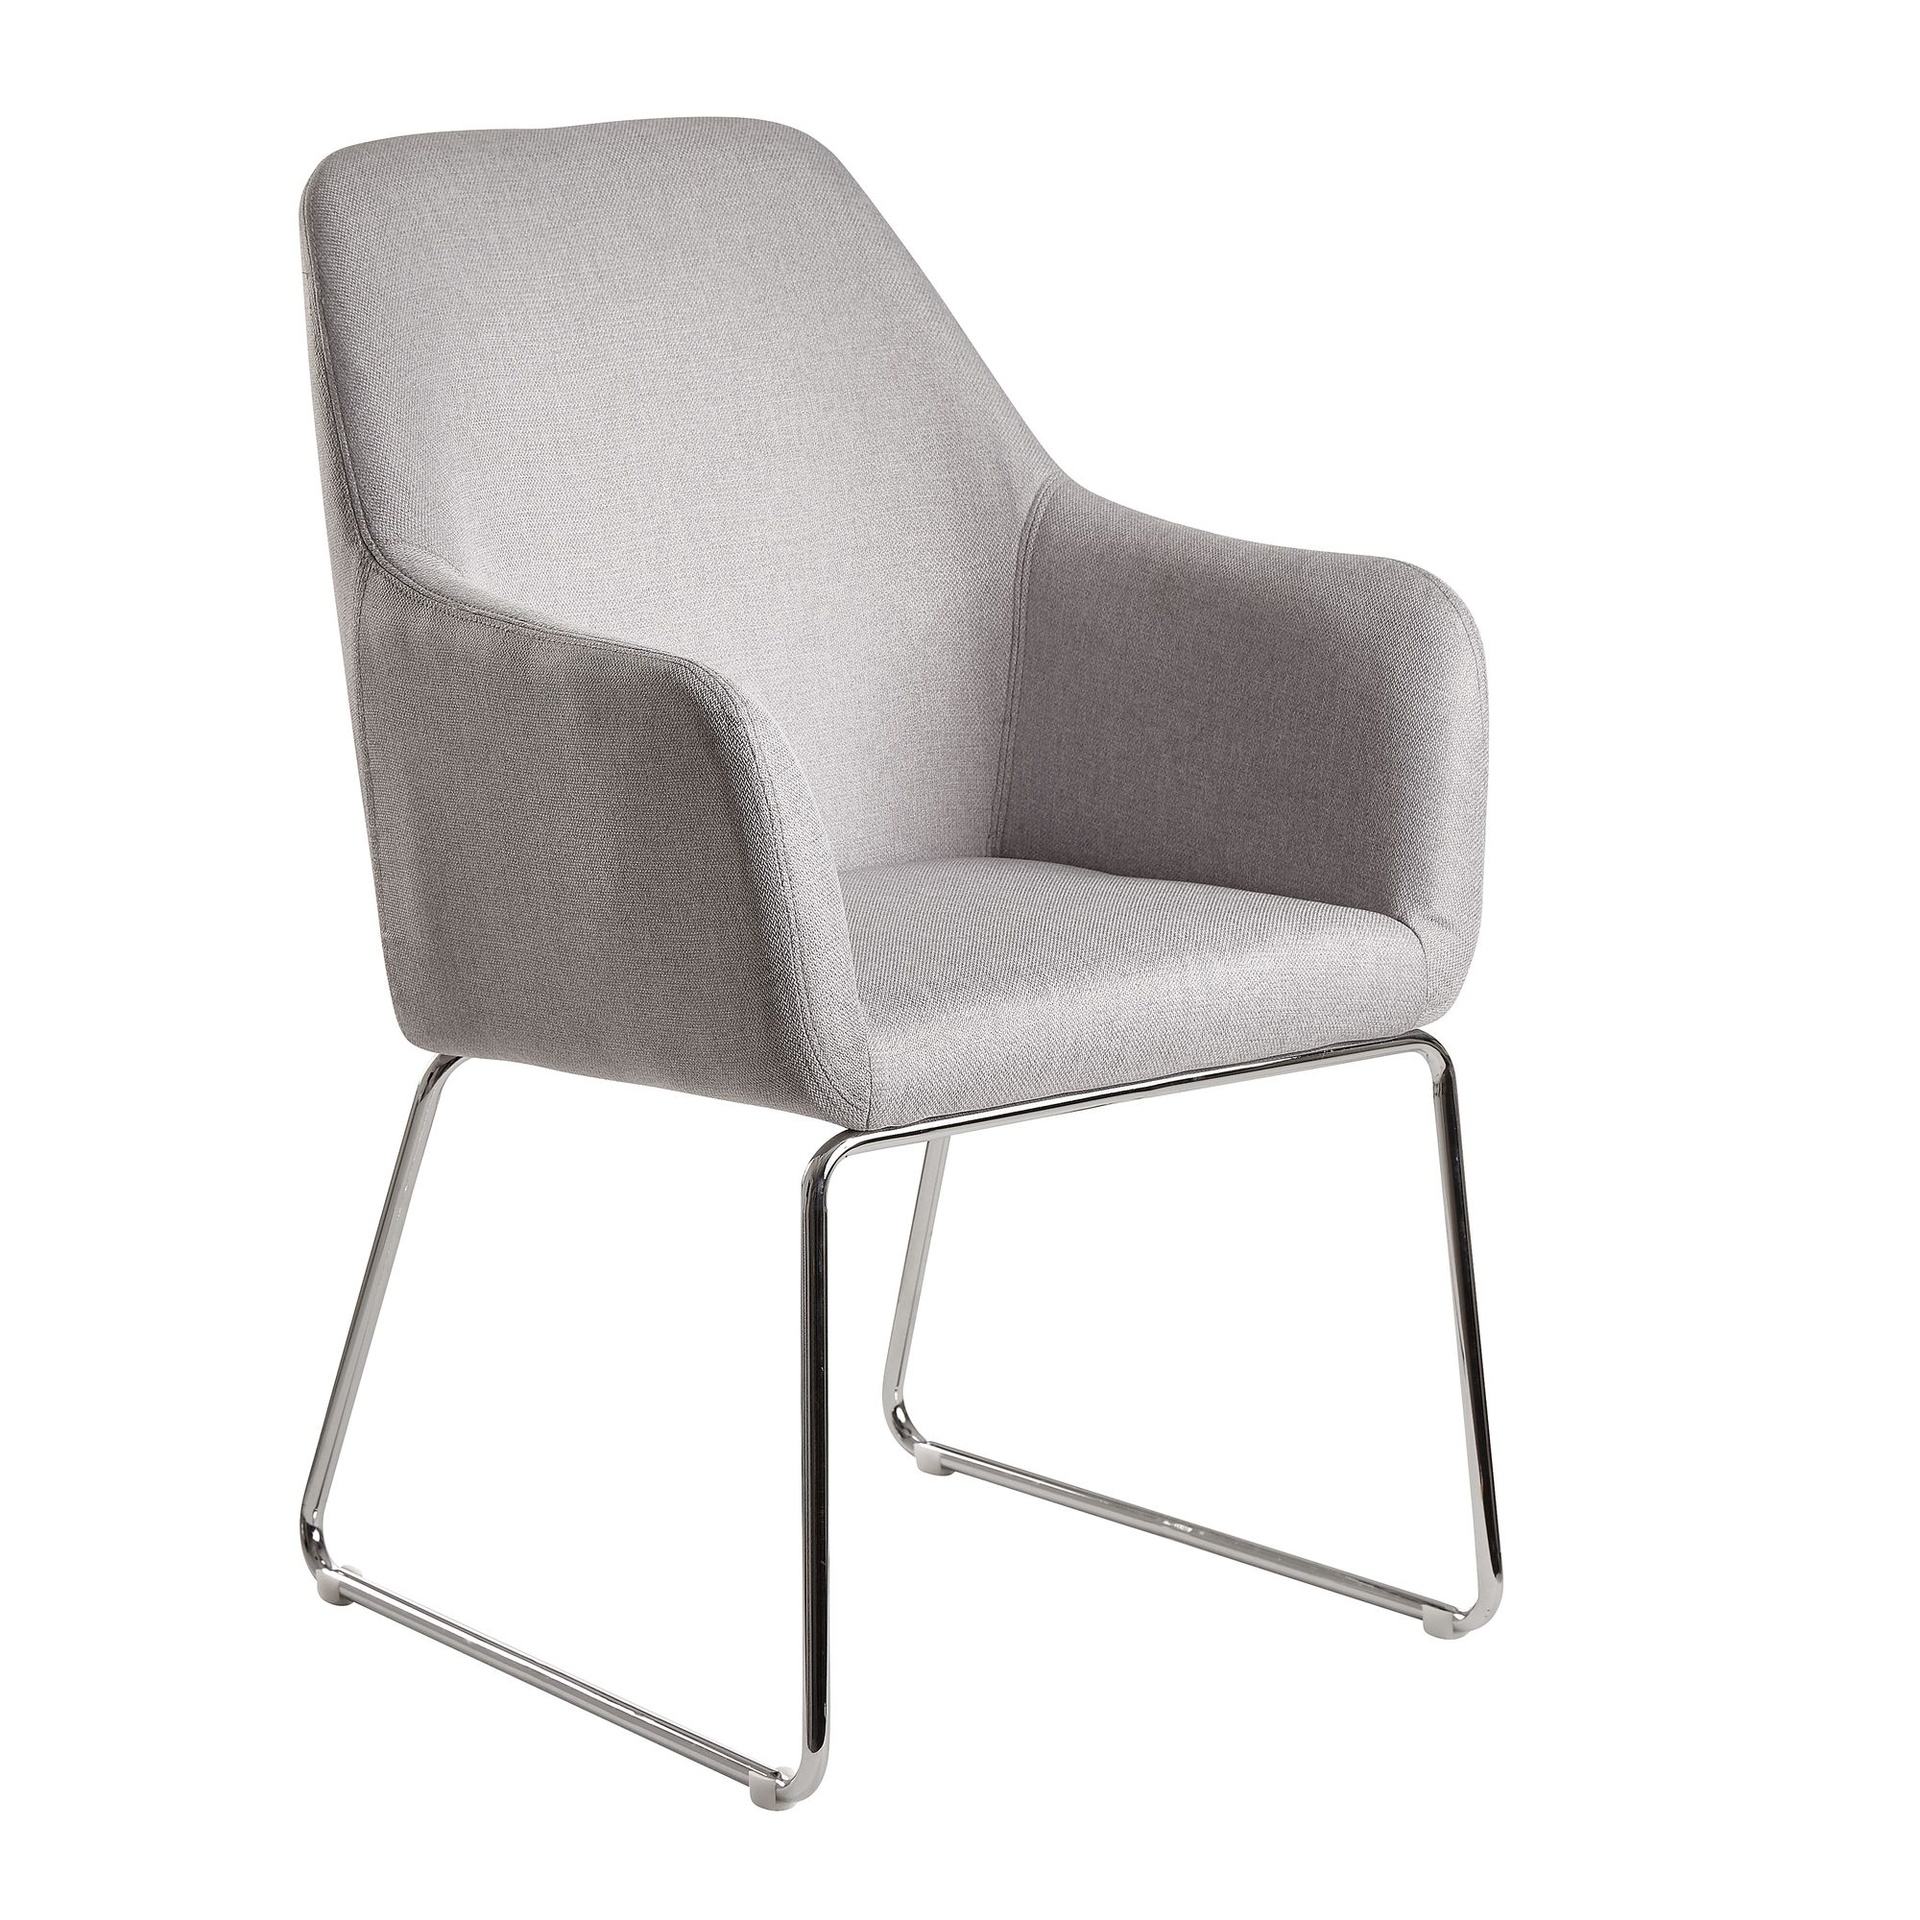 [A10064] Chaise de salle à manger tissu gris clair / métal avec pieds argentés, rembourrée